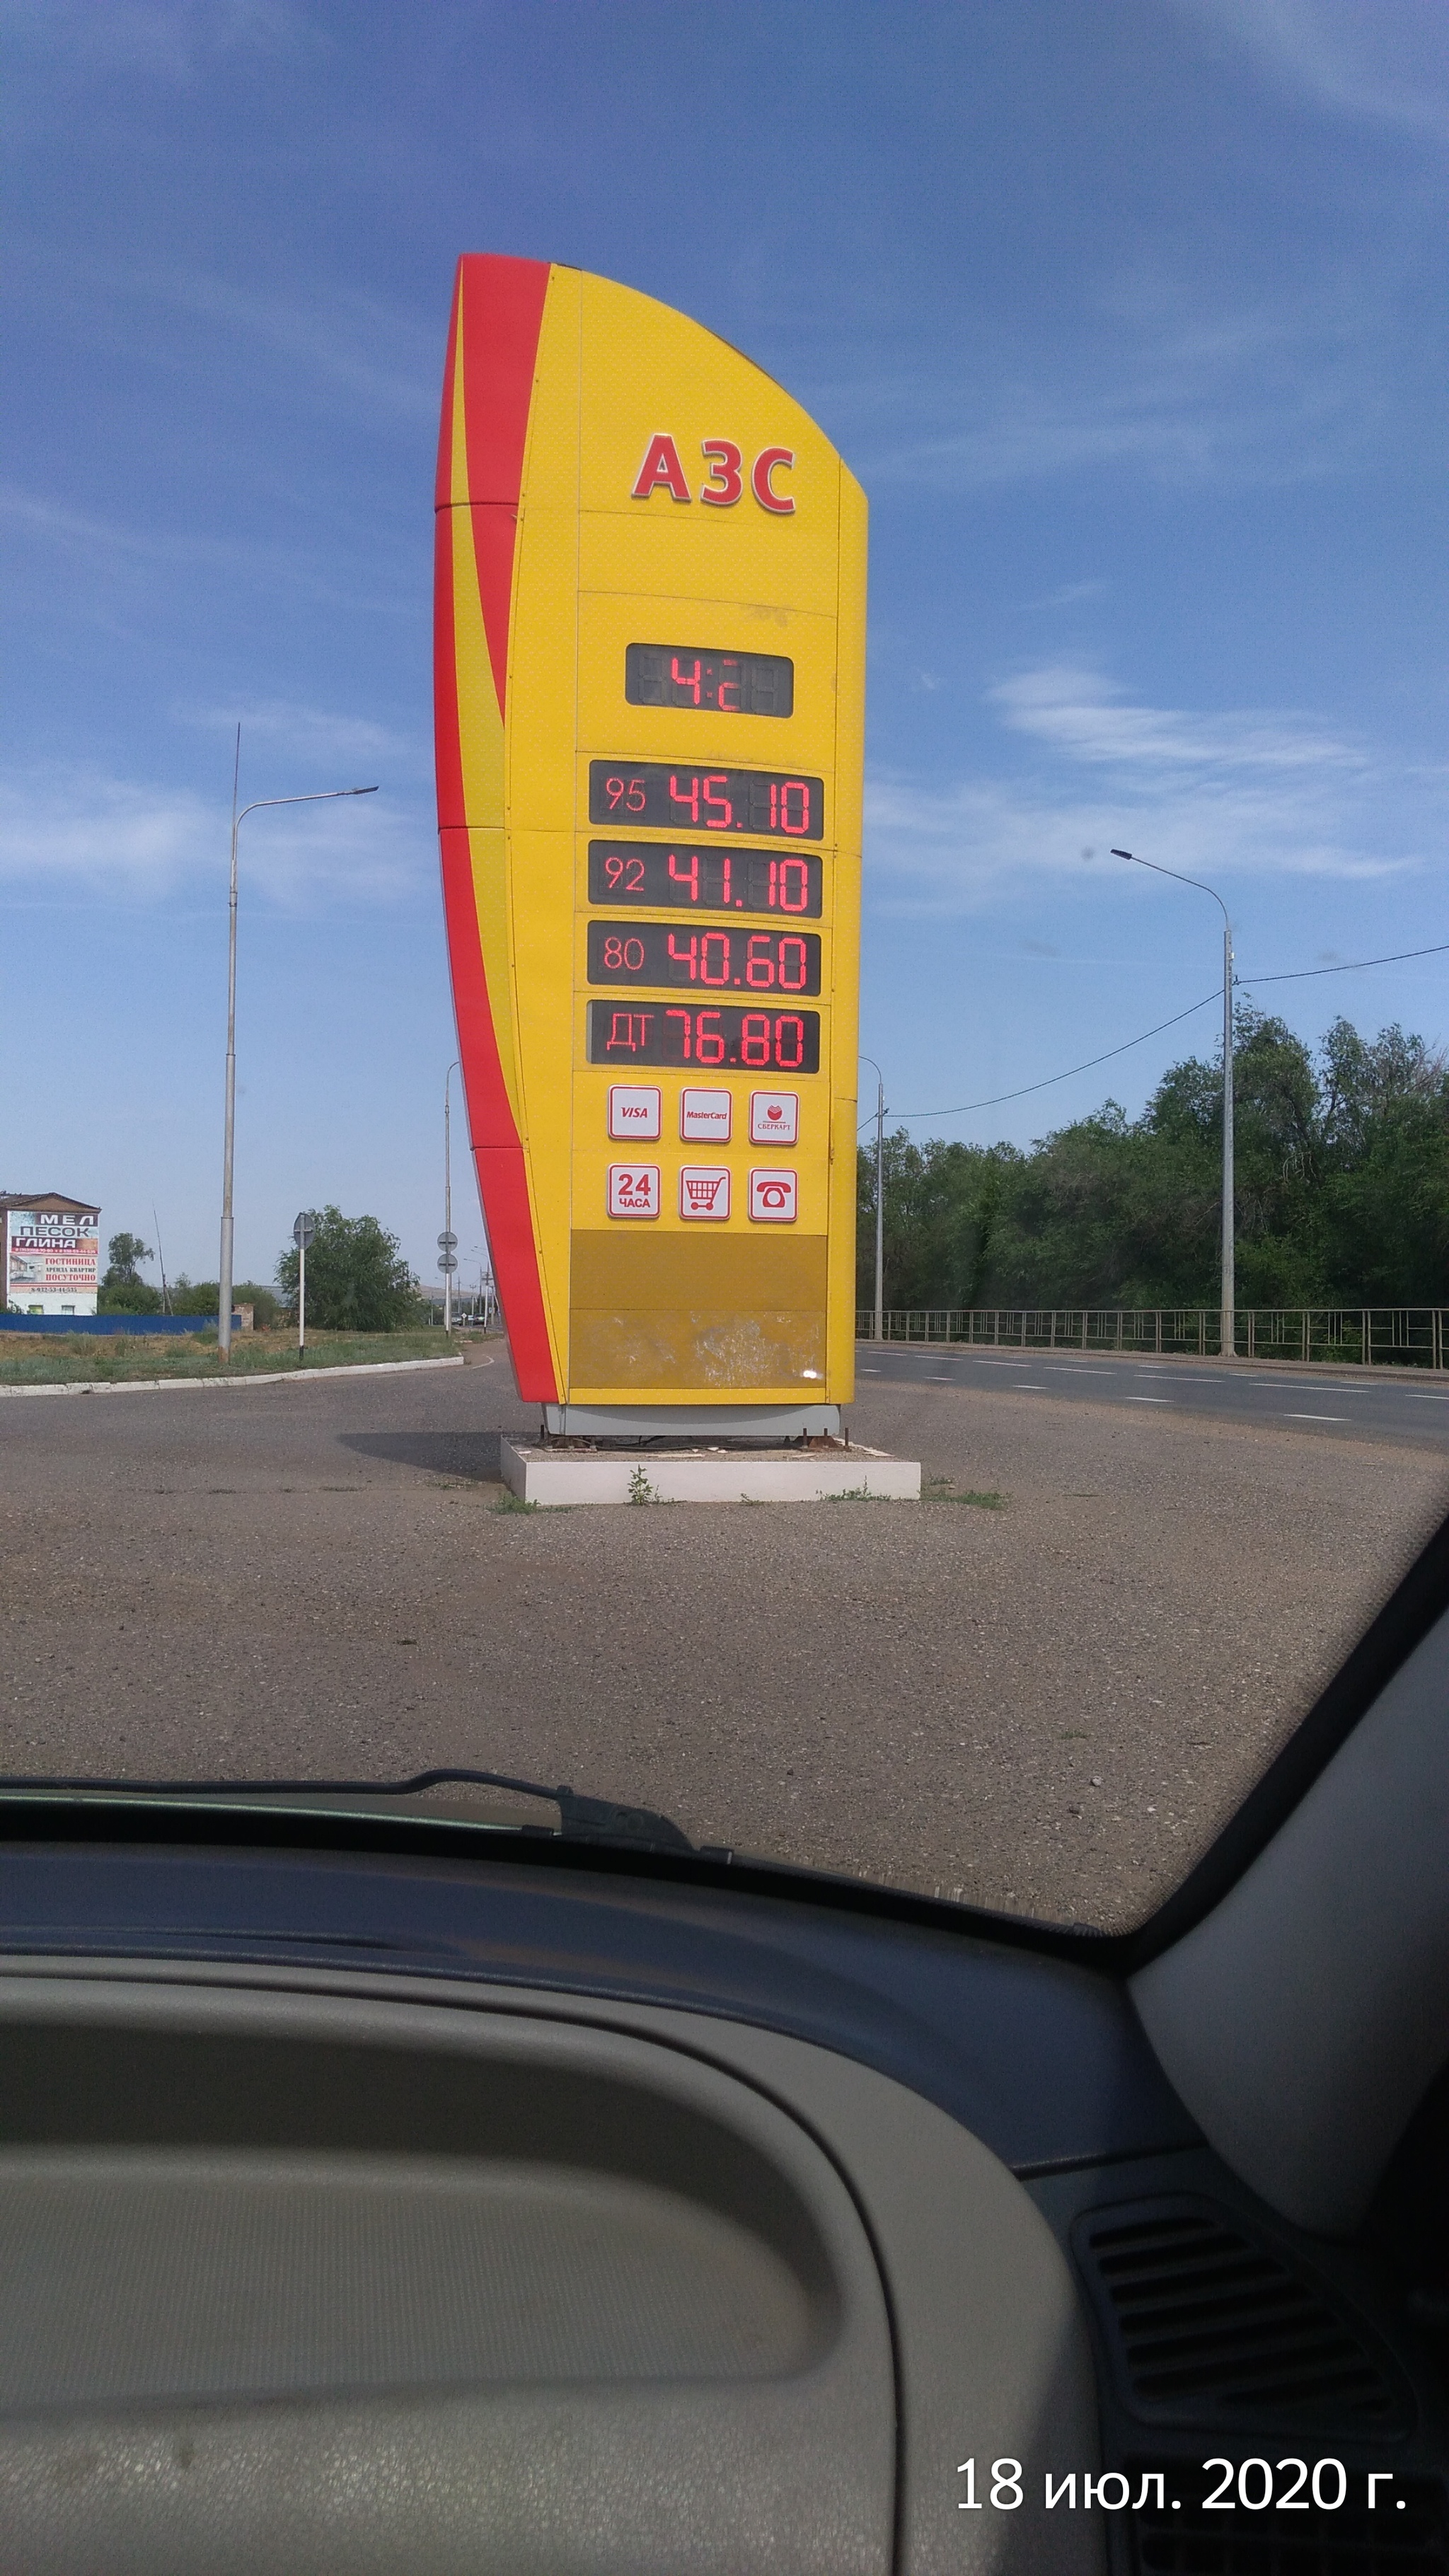 Цена на солярку в Оренбурге. Охренеть просто | Пикабу